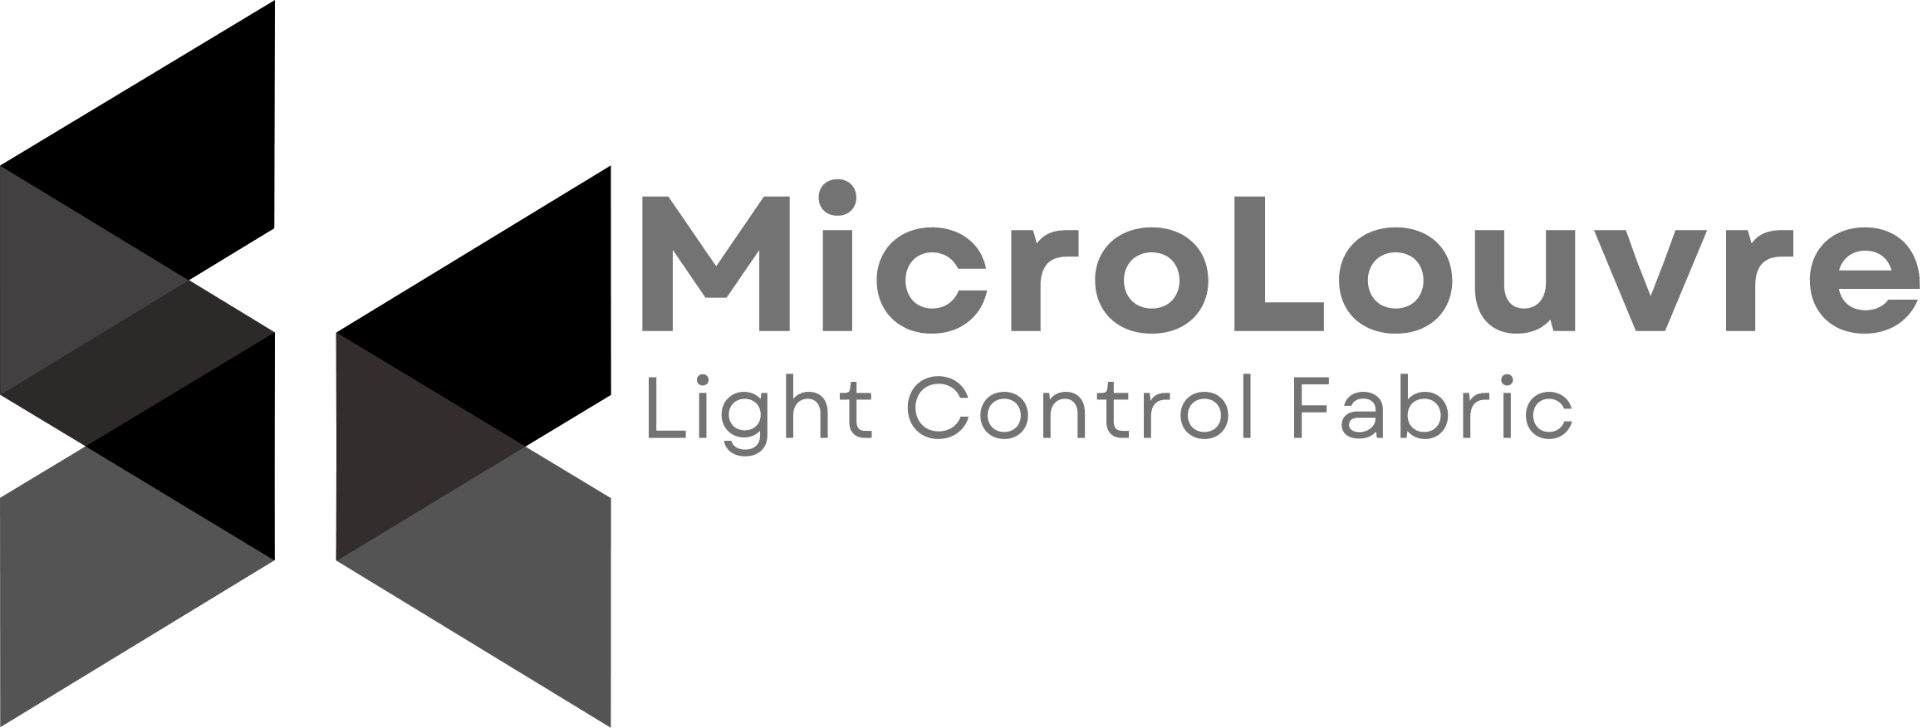 microlouvre logo